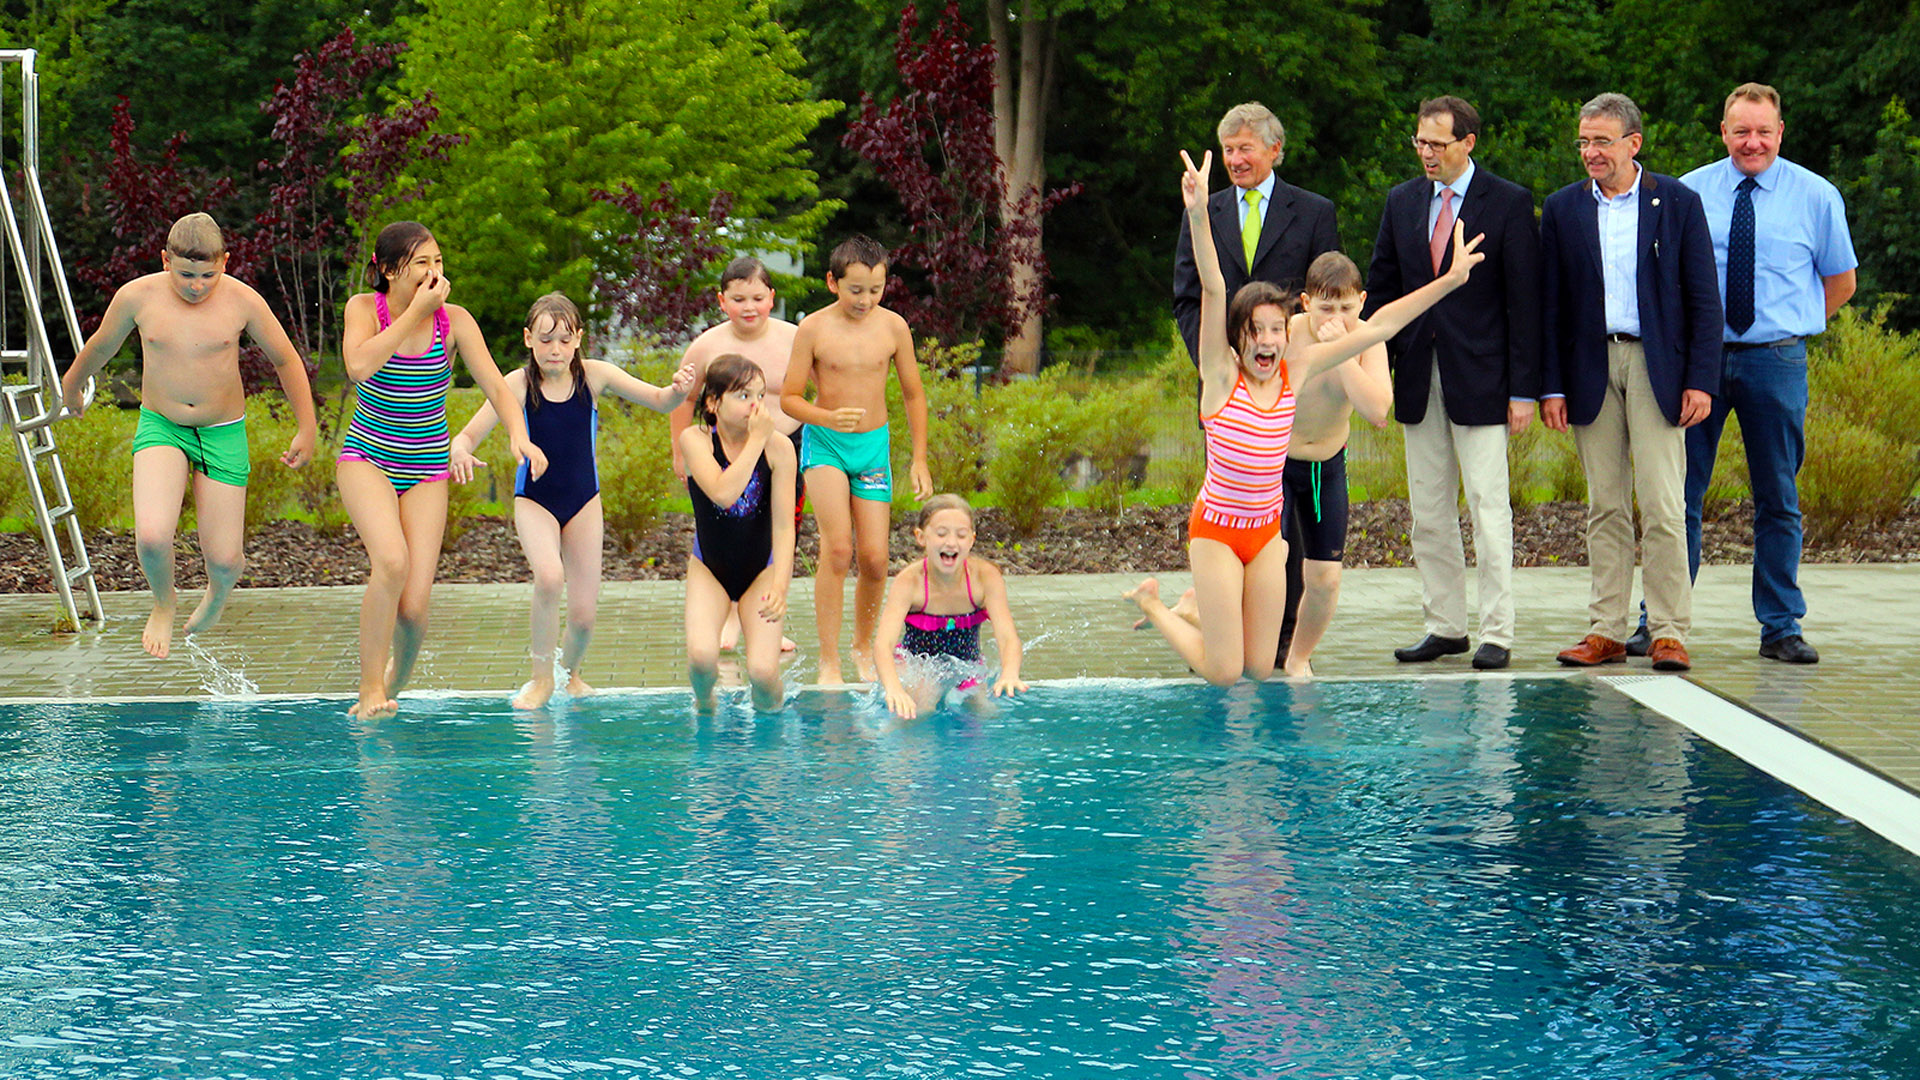 Kinder springen vom Beckenrand in ein Schwimmbecken. Daneben stehen Männer in Anzügen.